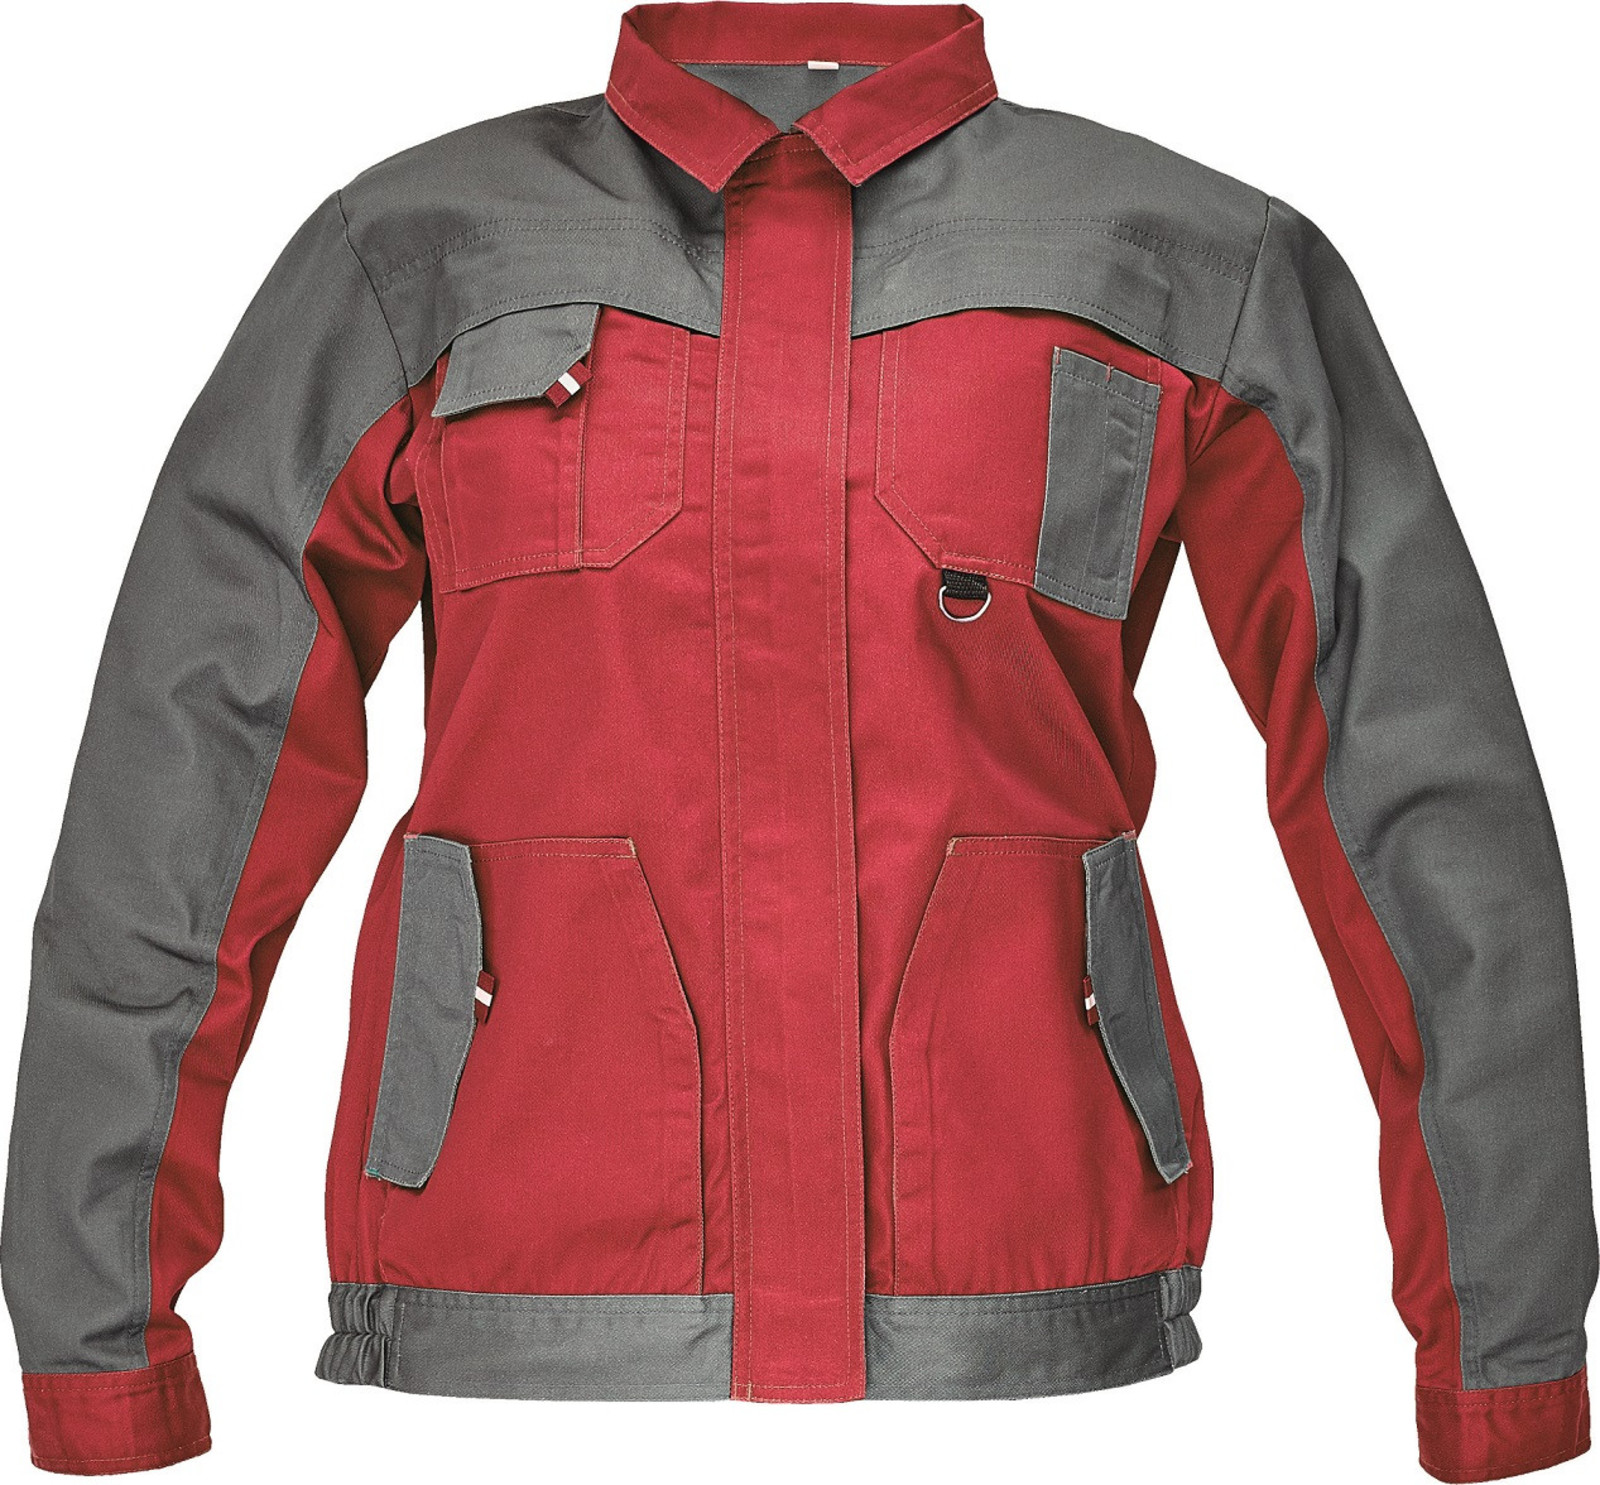 Tenká dámska montérková bunda Max Evo Lady - veľkosť: 46, farba: sivá/červená